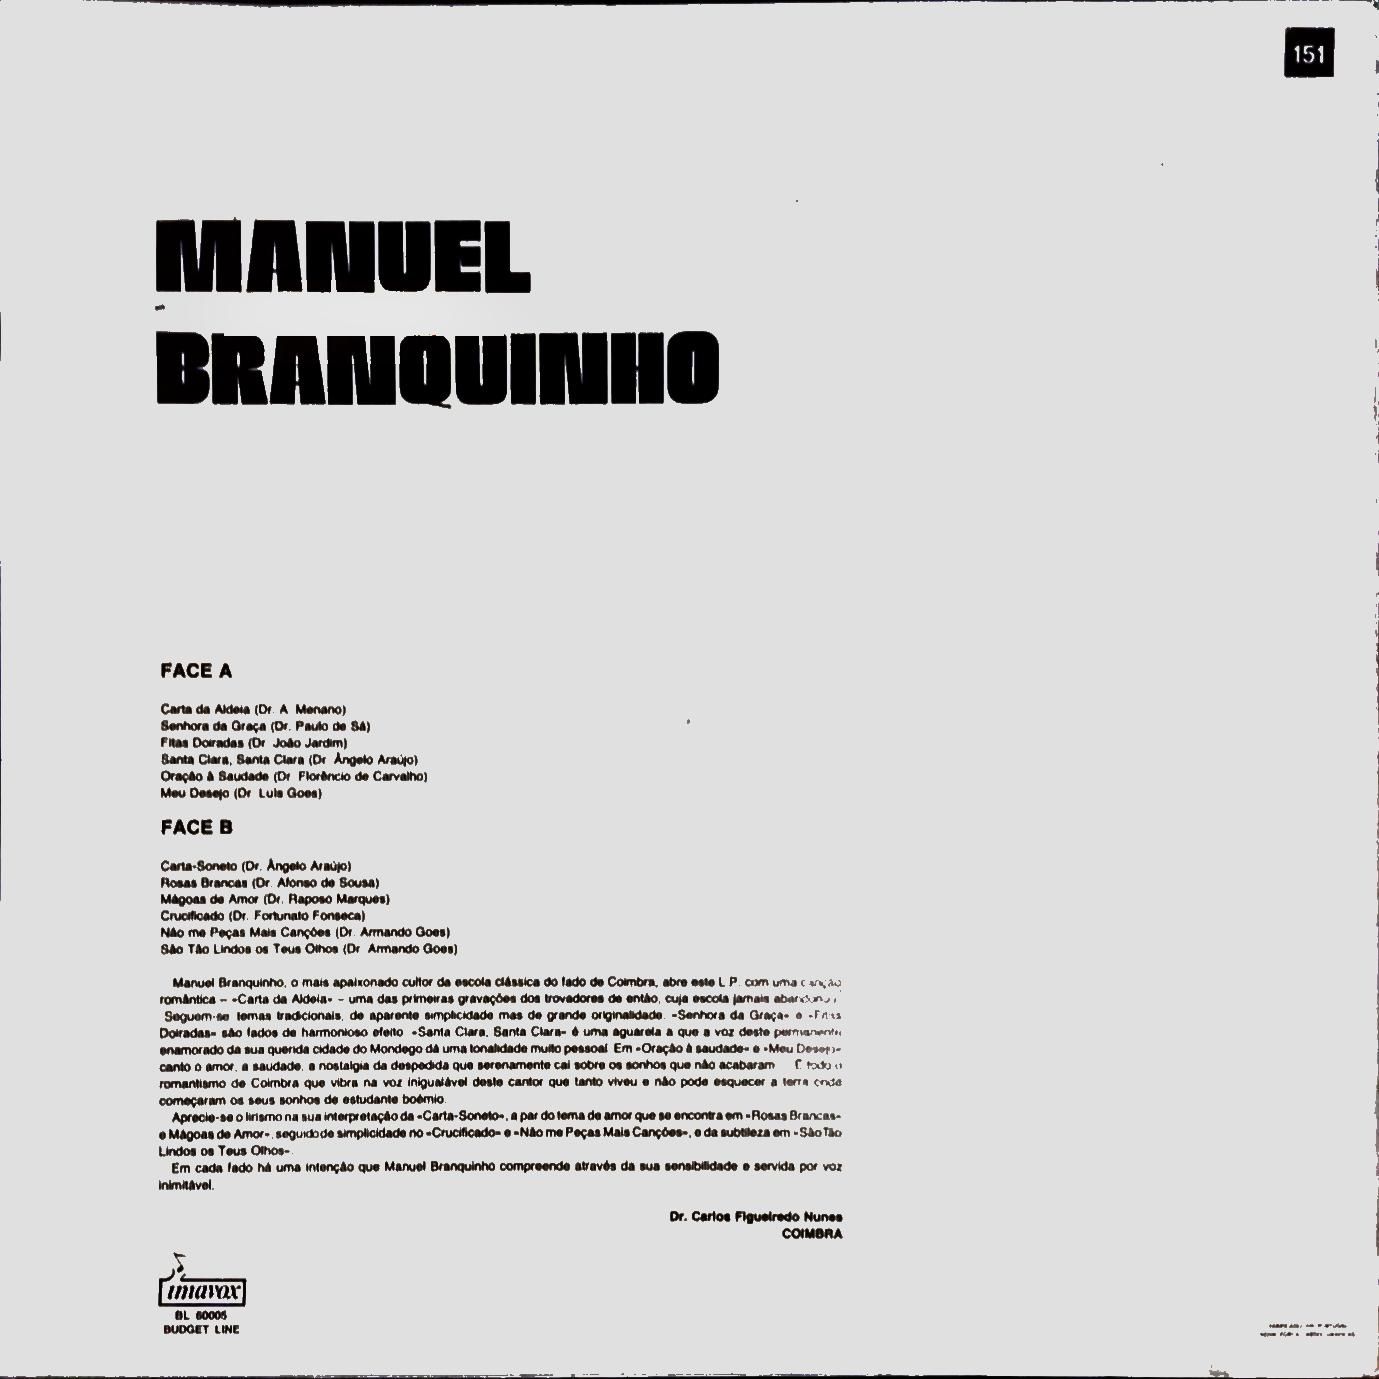 Disco vinil - Manuel Branquinho "Fados de Coimbra"